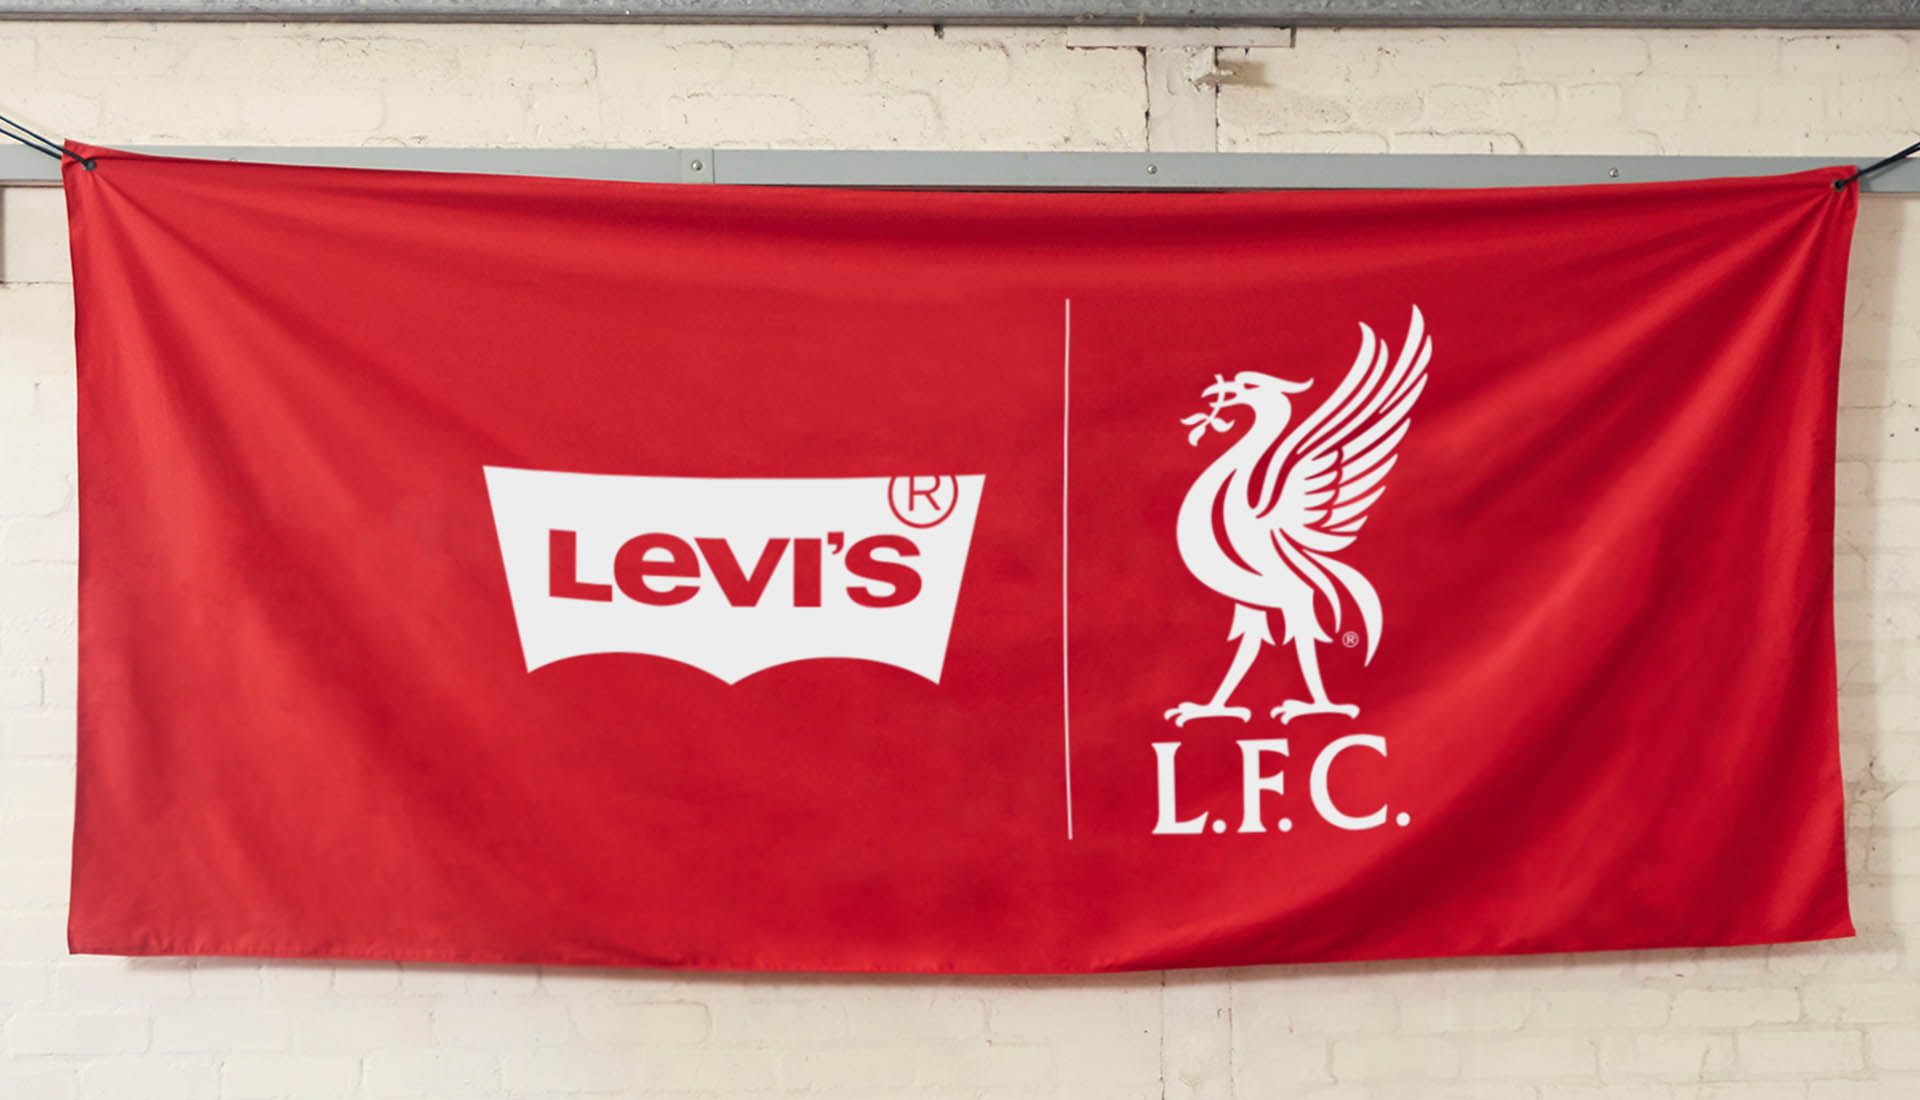 Música y futbol: Liverpool FC se asocia con Levi's para unir comunidad inglesa